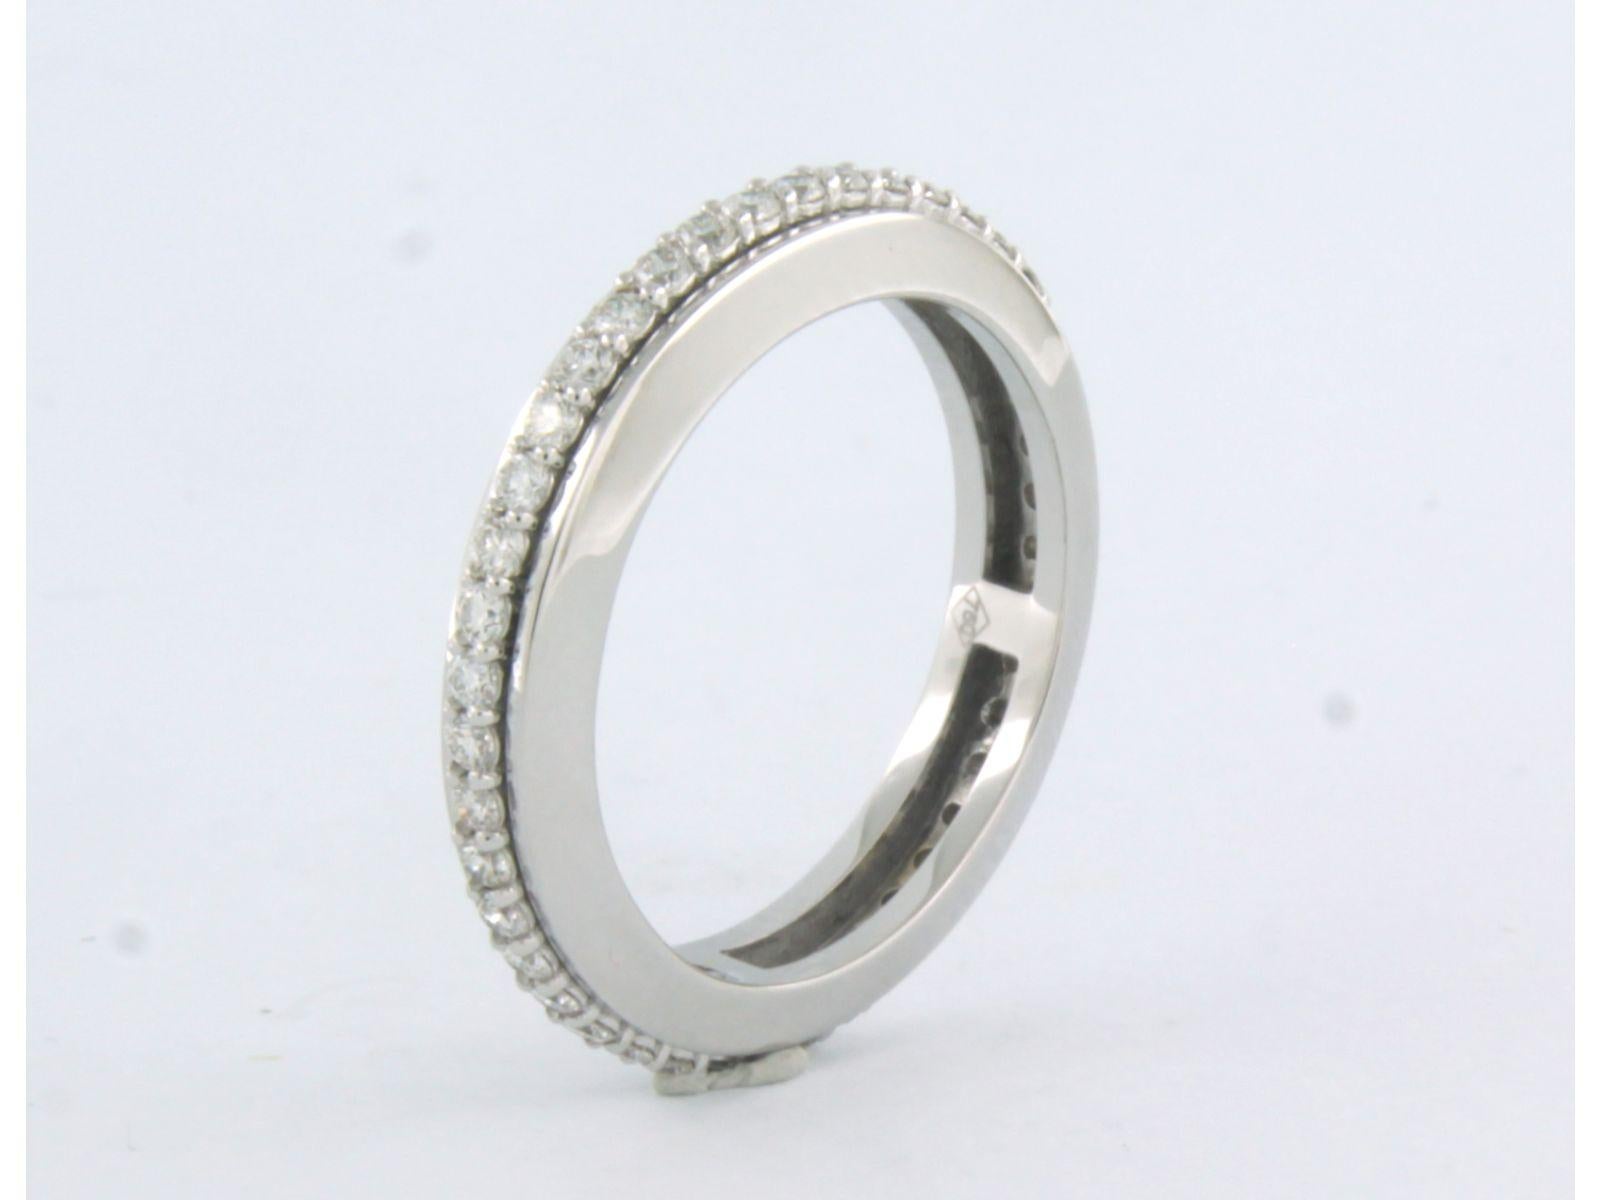 Ring aus 18 Karat Weißgold, rundum mit Diamanten im Brillantschliff besetzt. 0,72ct - F/G - VS/SI - Ringgröße U.S. 8 - EU. 18.25(57)

detaillierte Beschreibung:

dieser Ring ist 4,1 mm breit und 3,0 mm hoch

Ring Größe US 8 - EU. 18.25(57)

Gewicht: